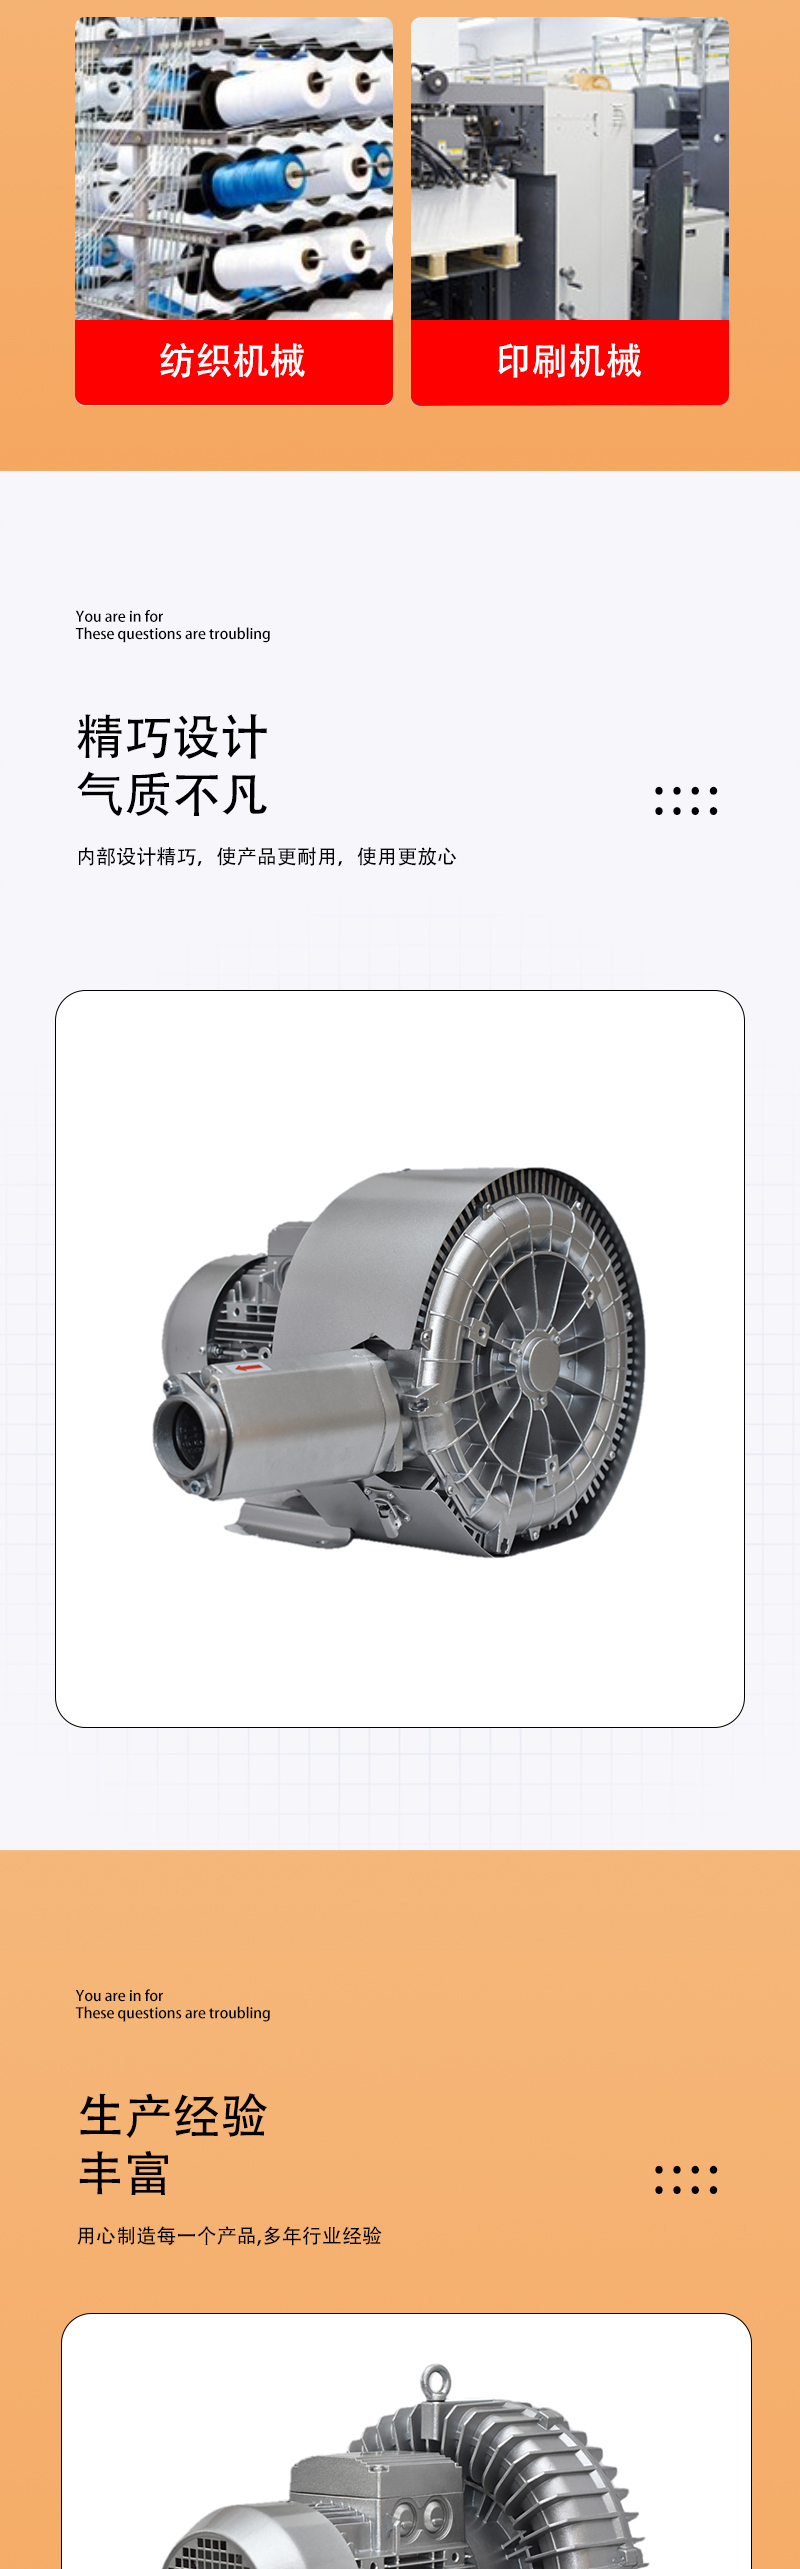 双段高压鼓风机 旋涡式气泵 配套真空旋涡气泵气环式高压鼓风机